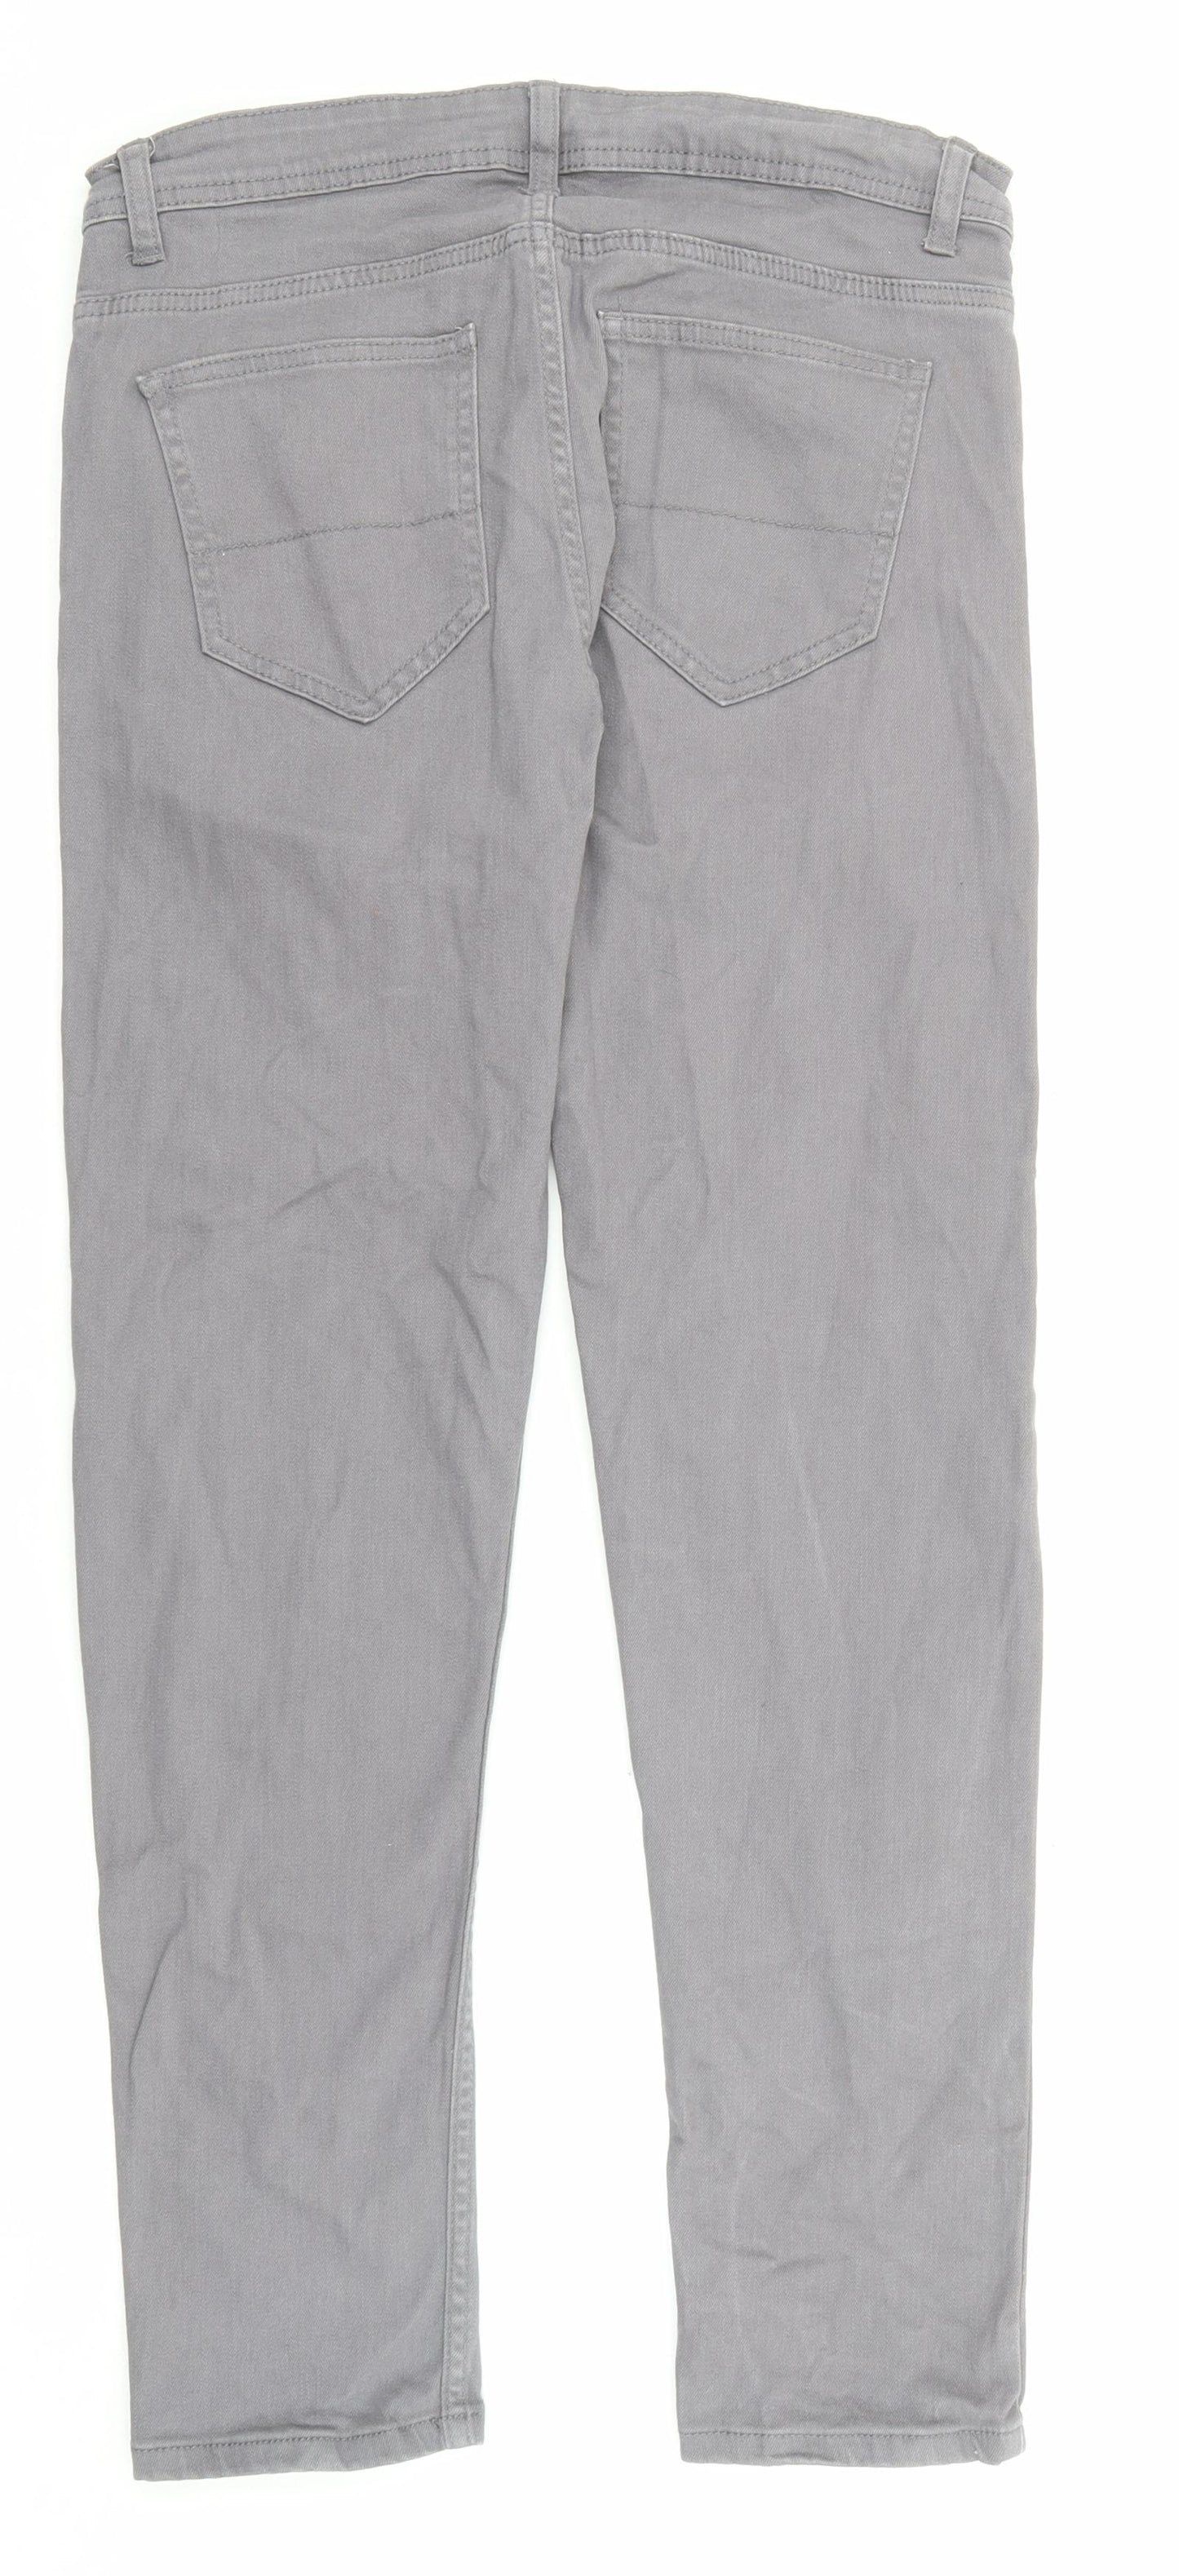 Denim & Co. Mens Grey Cotton Skinny Jeans Size 30 in L30 in Regular Zip